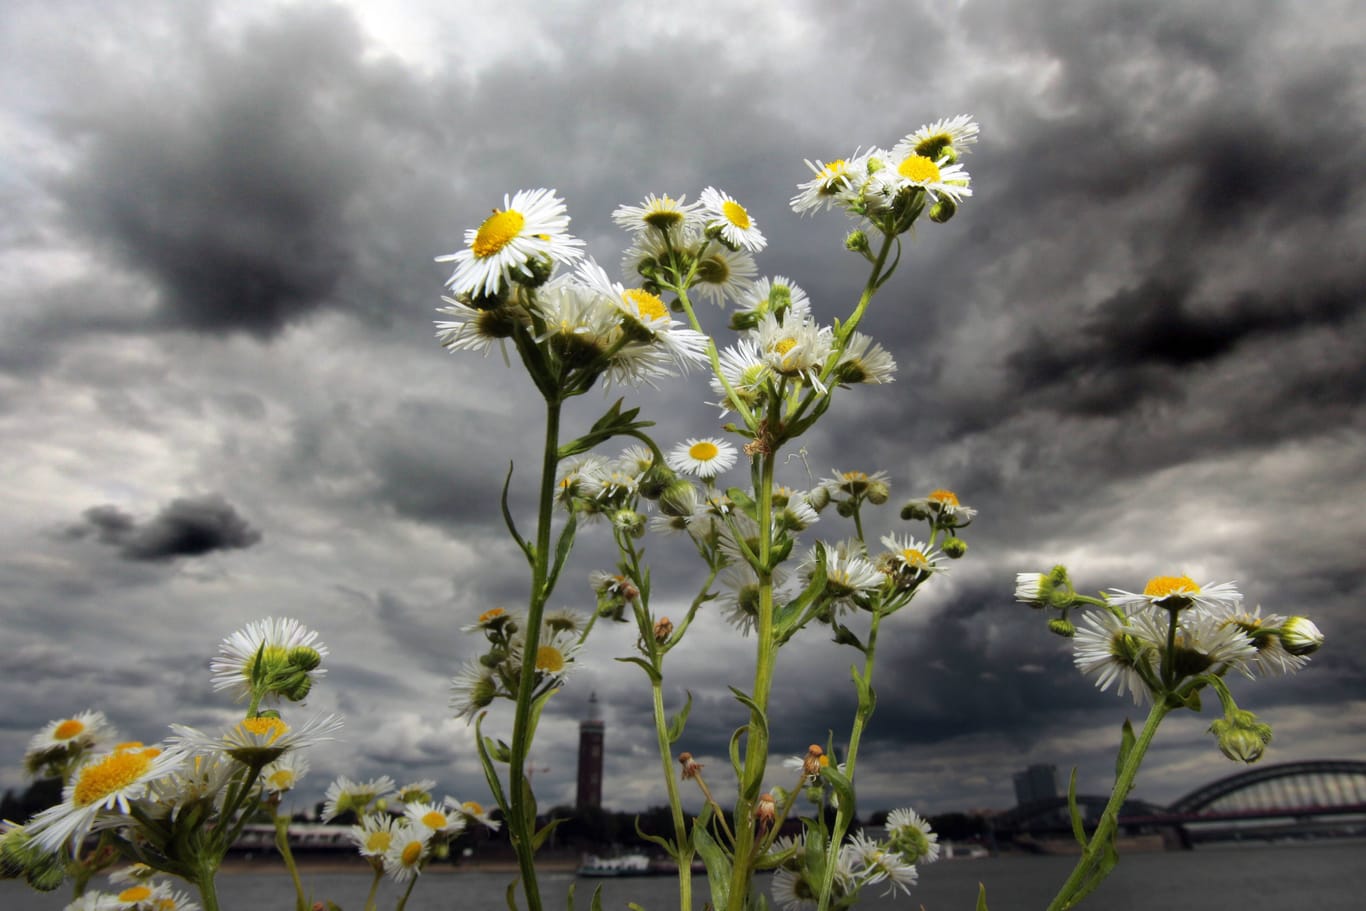 Dunkle Gewitterwolken vor blühenden Margeriten am Rheinufer in Köln (Archivfoto): In der neuen Woche wird es wieder ungemütlicher.